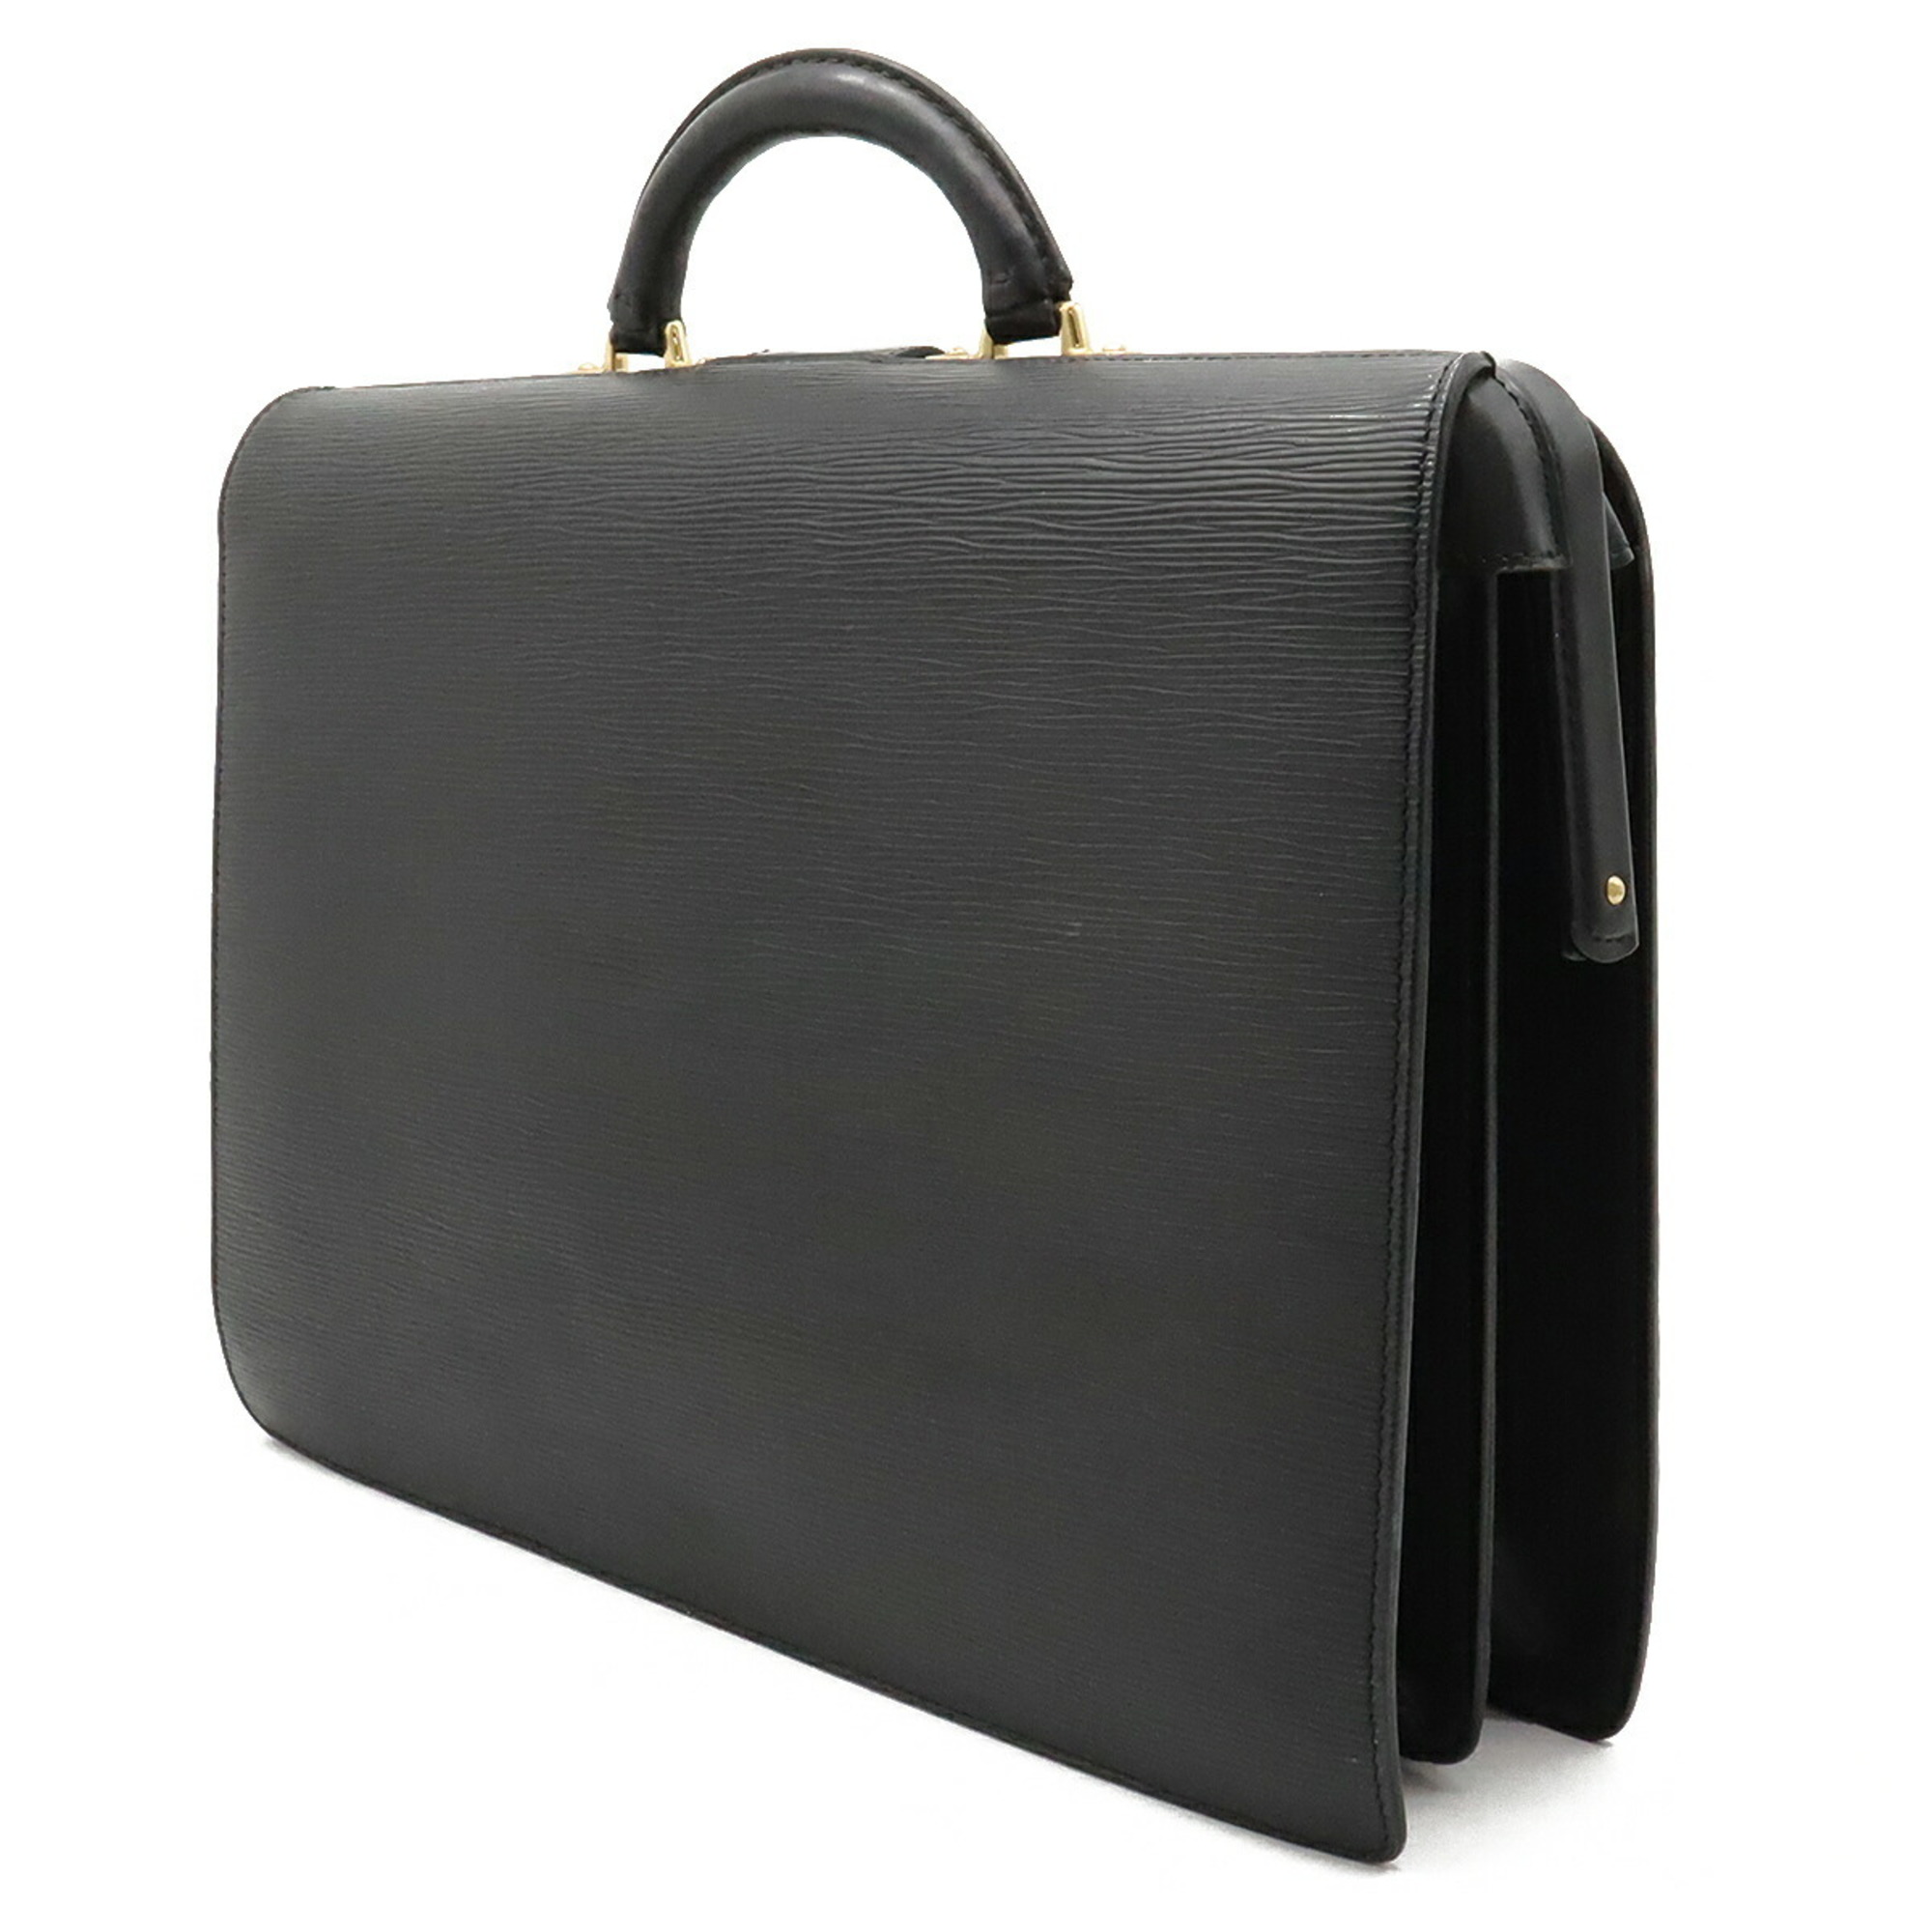 LOUIS VUITTON Louis Vuitton Epi Serviette Fermoir Bag Leather Noir Black Key Missing M54352